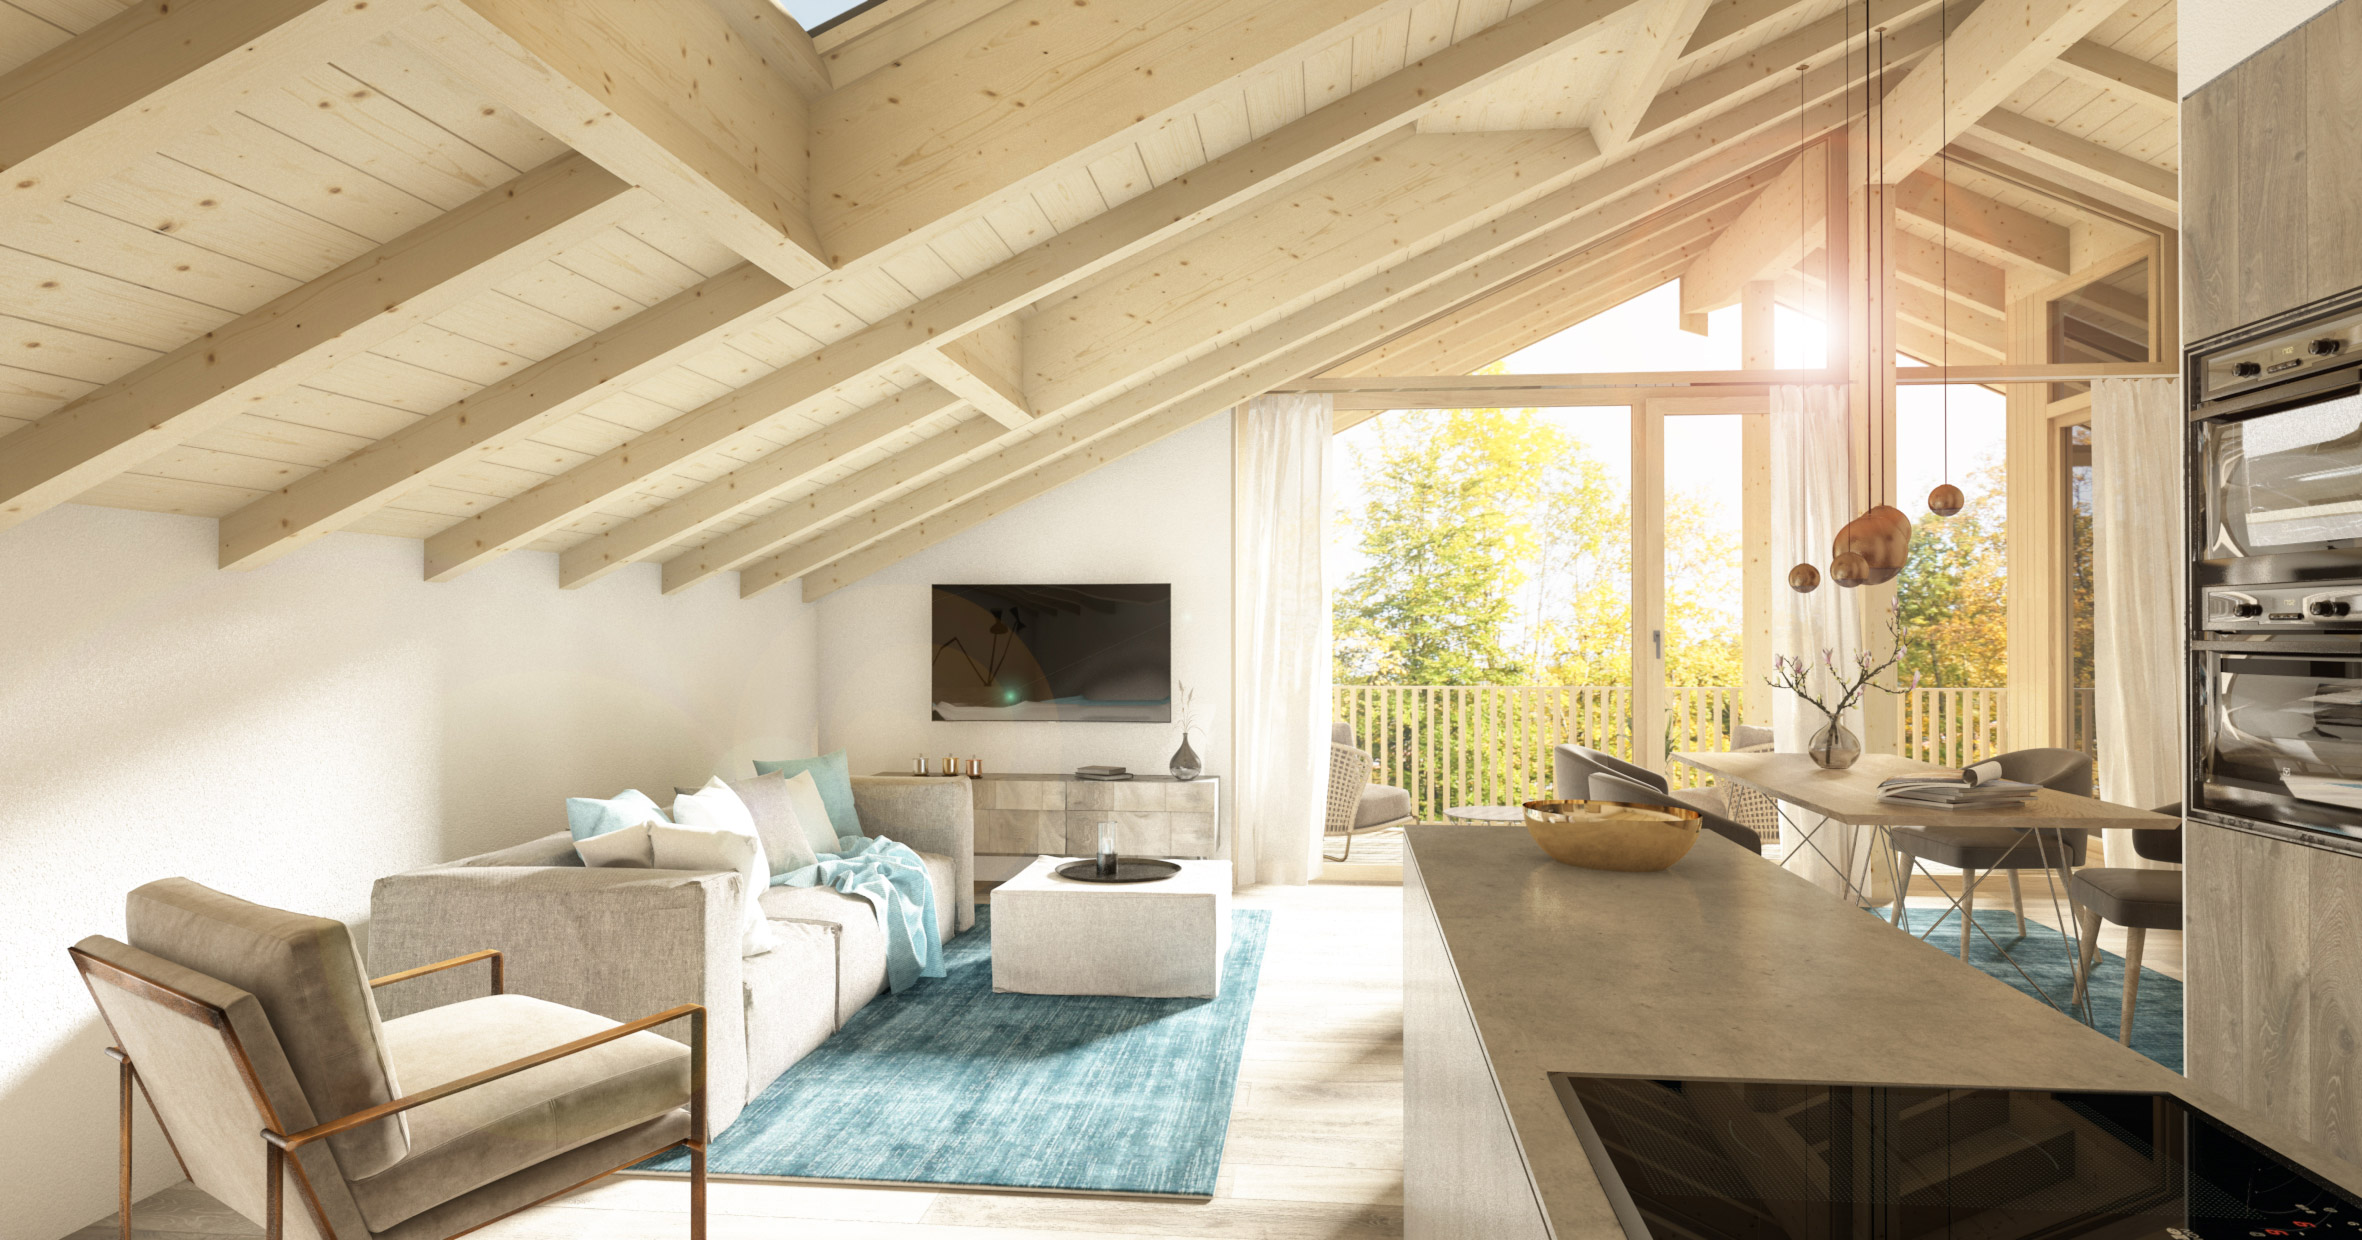 zimmerei-stoib-holzbau-schlüsselfertig-visualisierung-wohnzimmer-dachstuhl-dachgeschoss-wall-loggia-architektur-innenausbau-warngau-tegernsee-mehrfamilienhaus.jpg